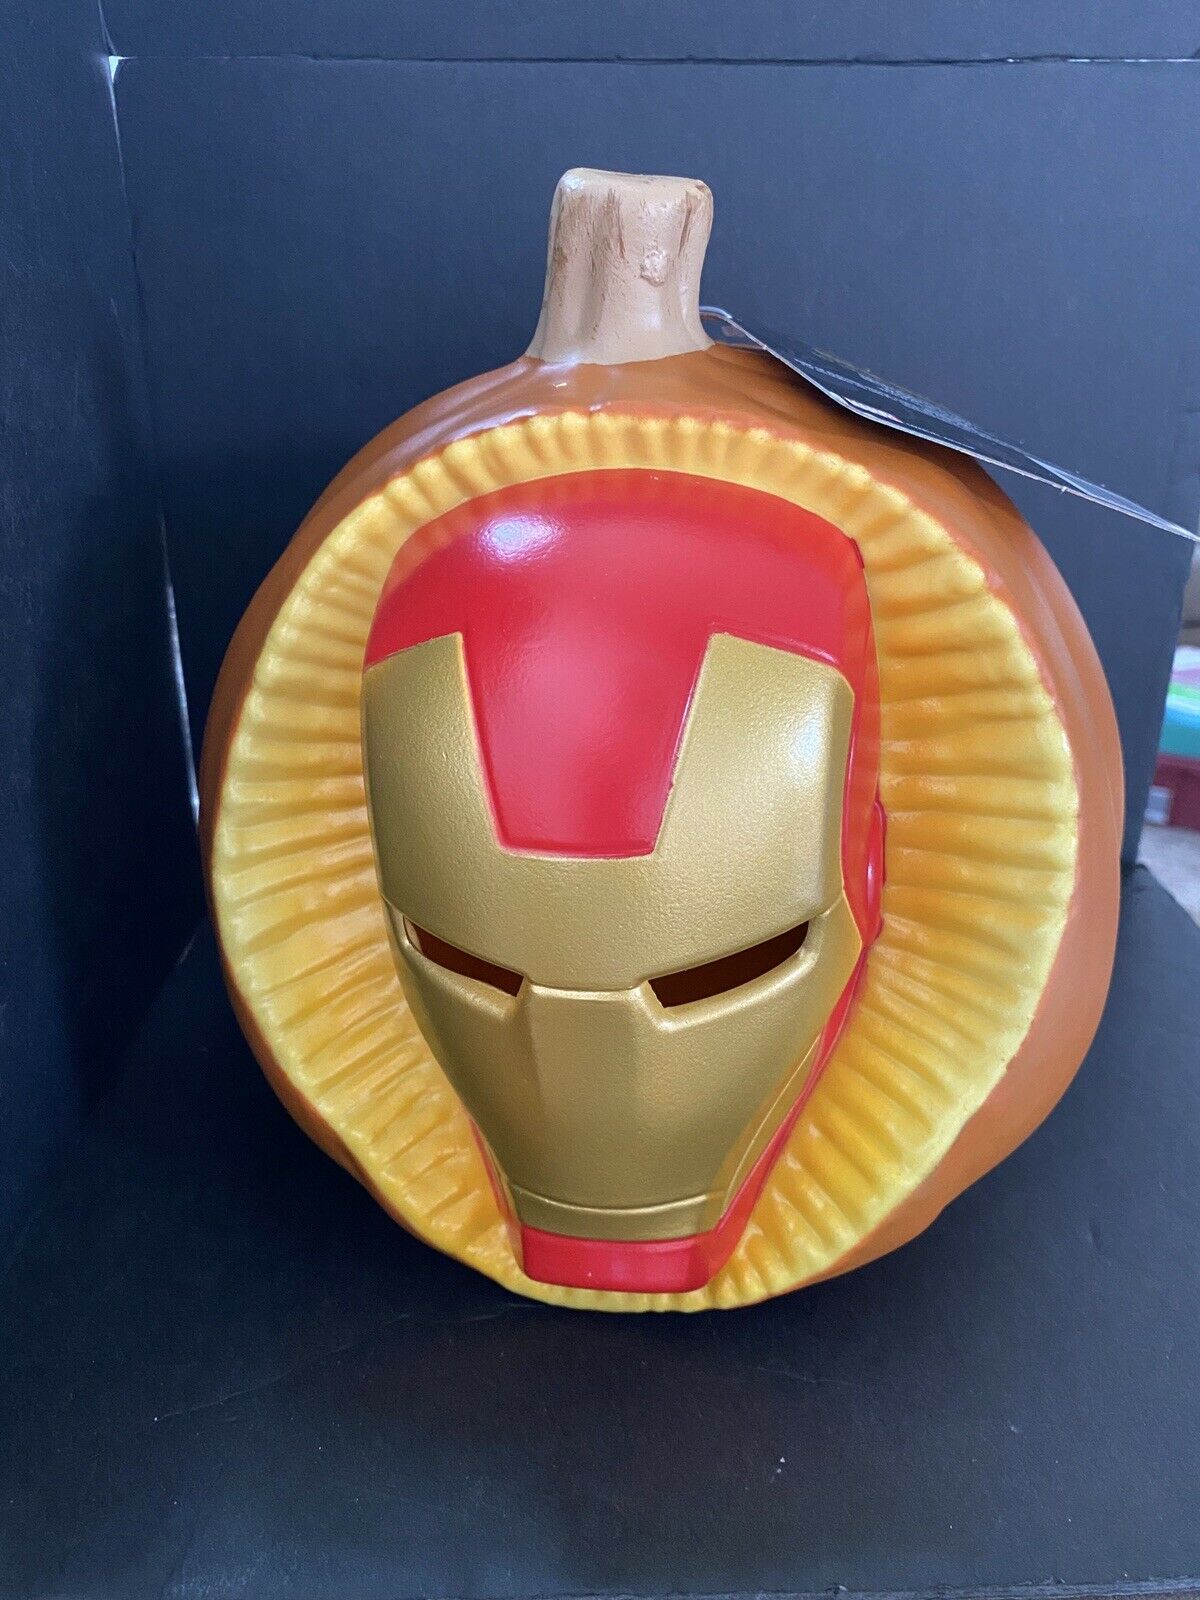 iron man pumpkin